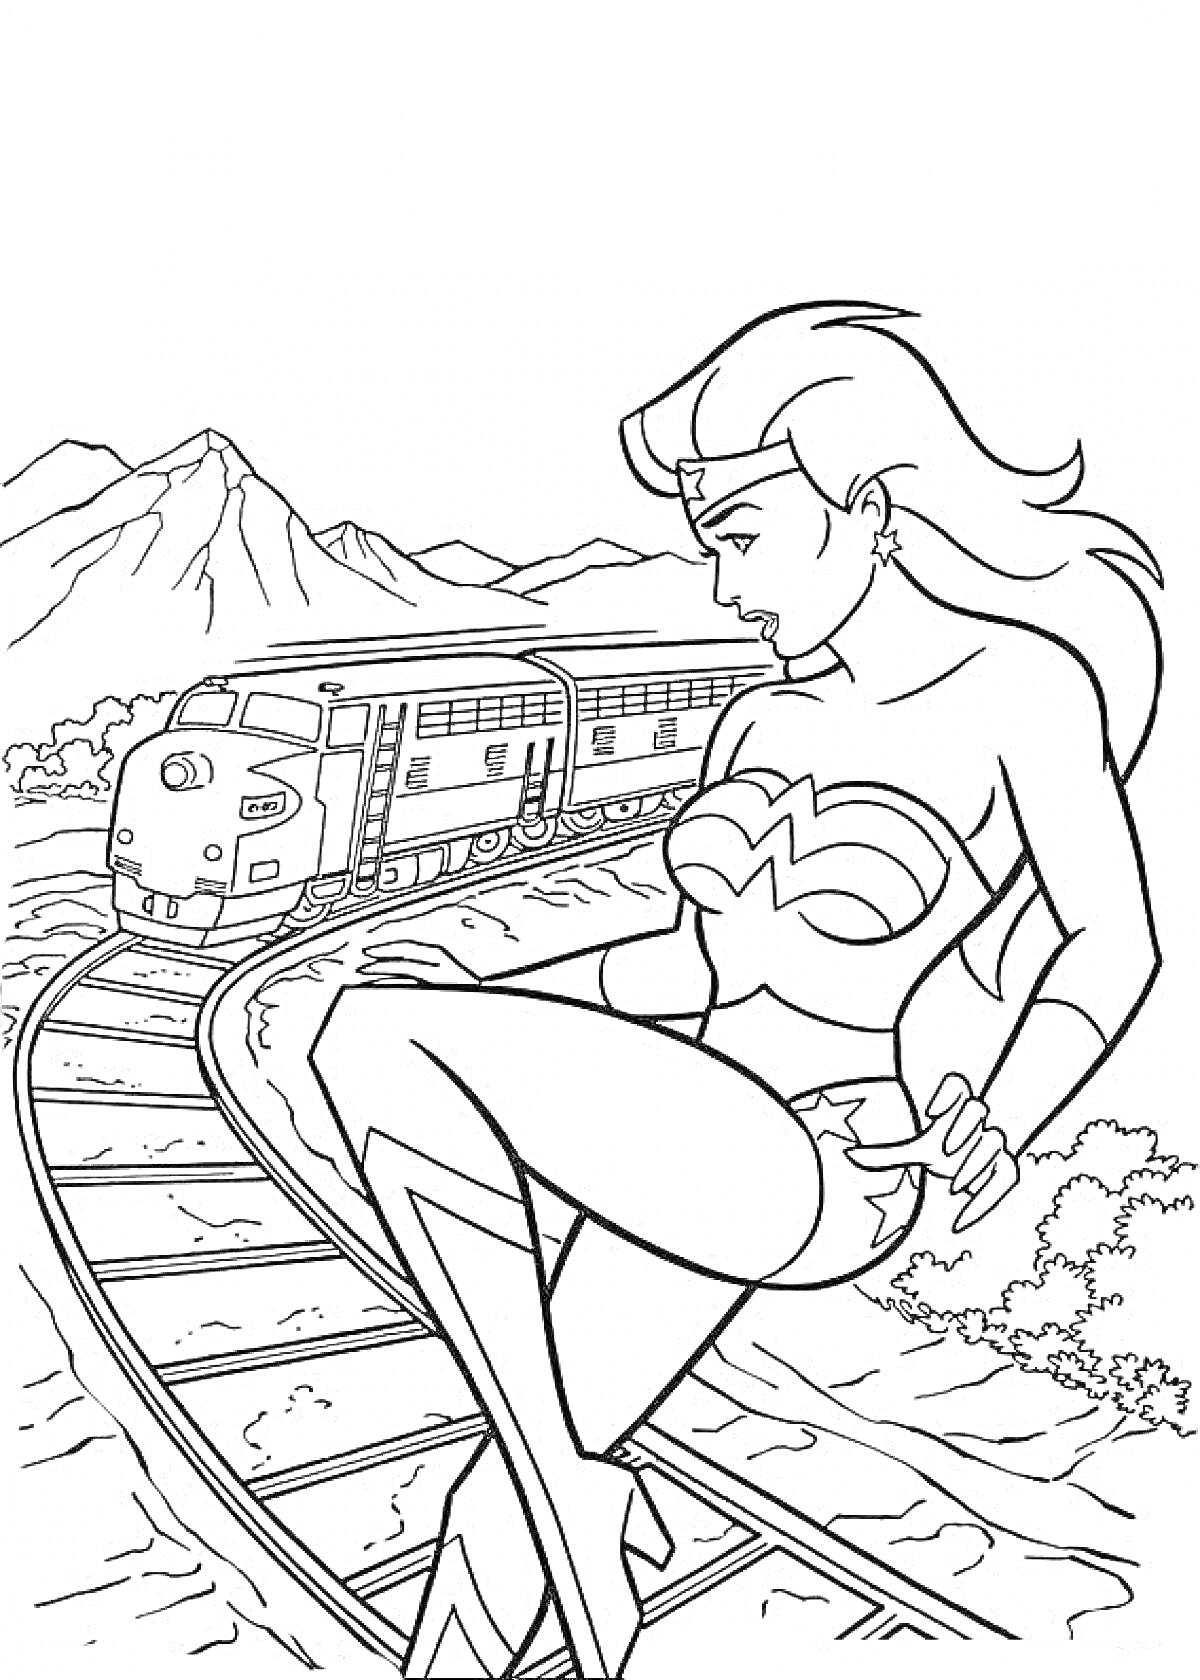 Чудо женщина сидит на железнодорожных путях, на заднем плане поезд, горы и деревья